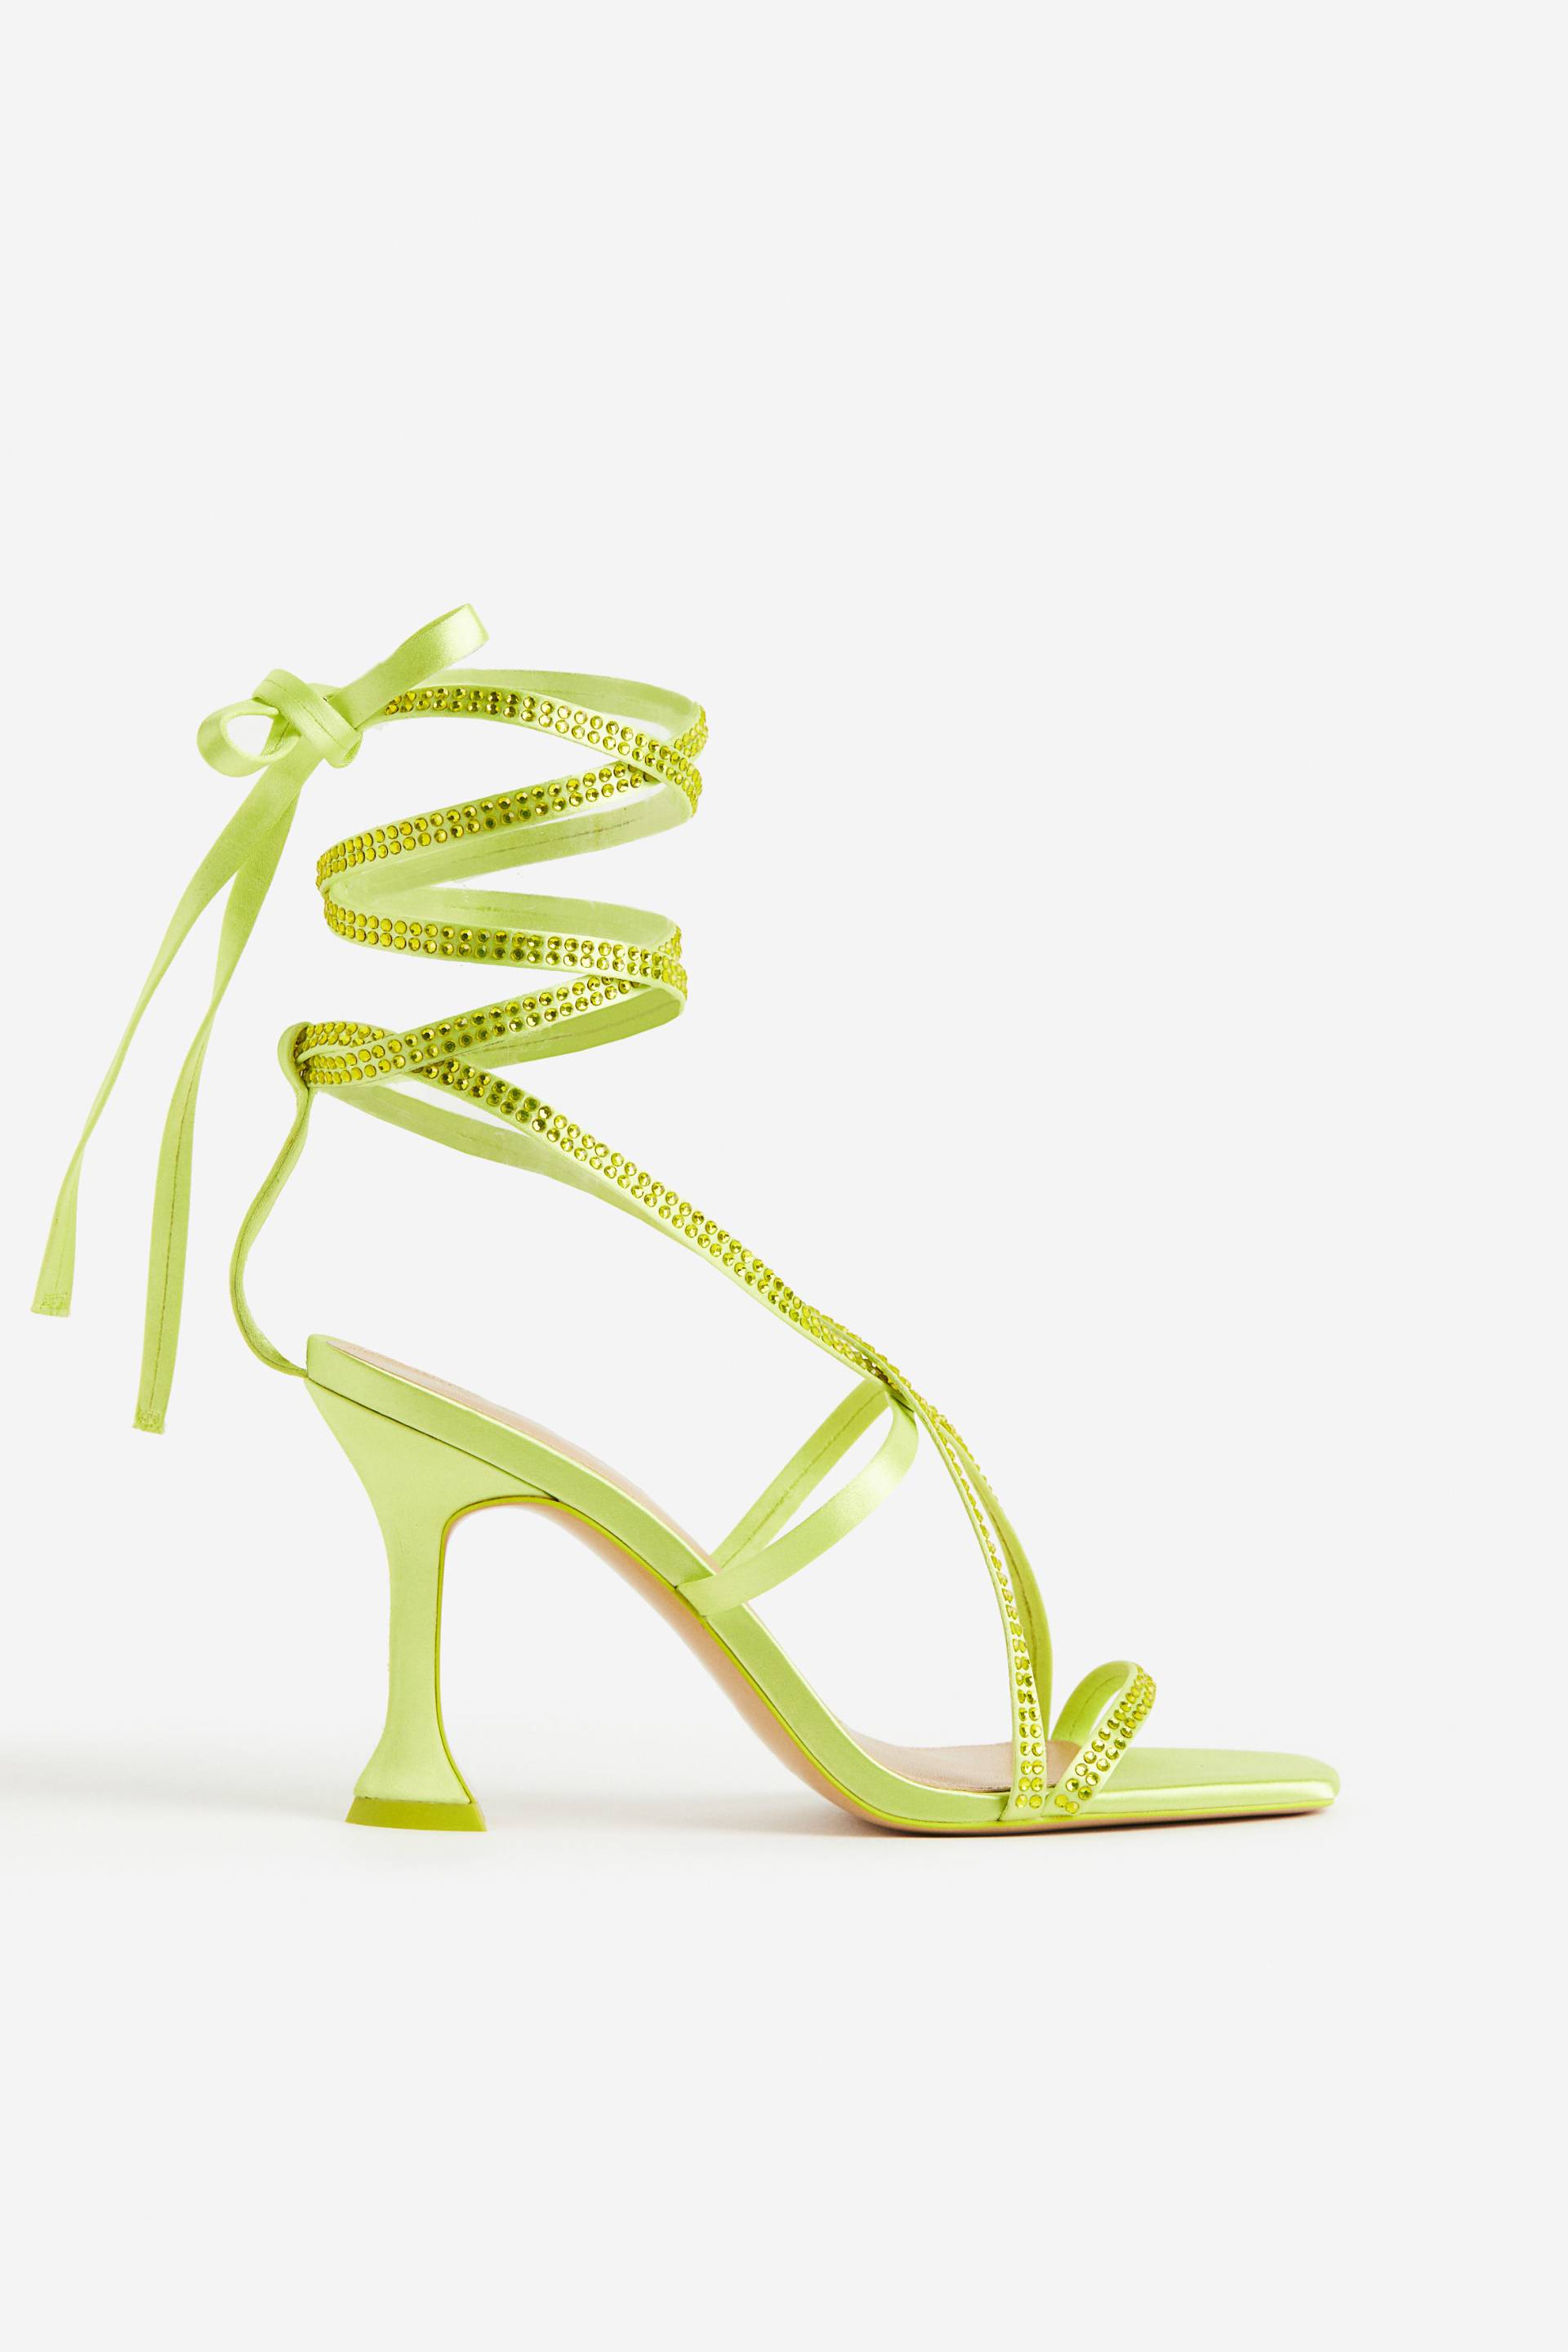 H&M Satinsandaletten mit Spool Heel Limegrün, Heels in Größe 40. Farbe: Lime green von H&M